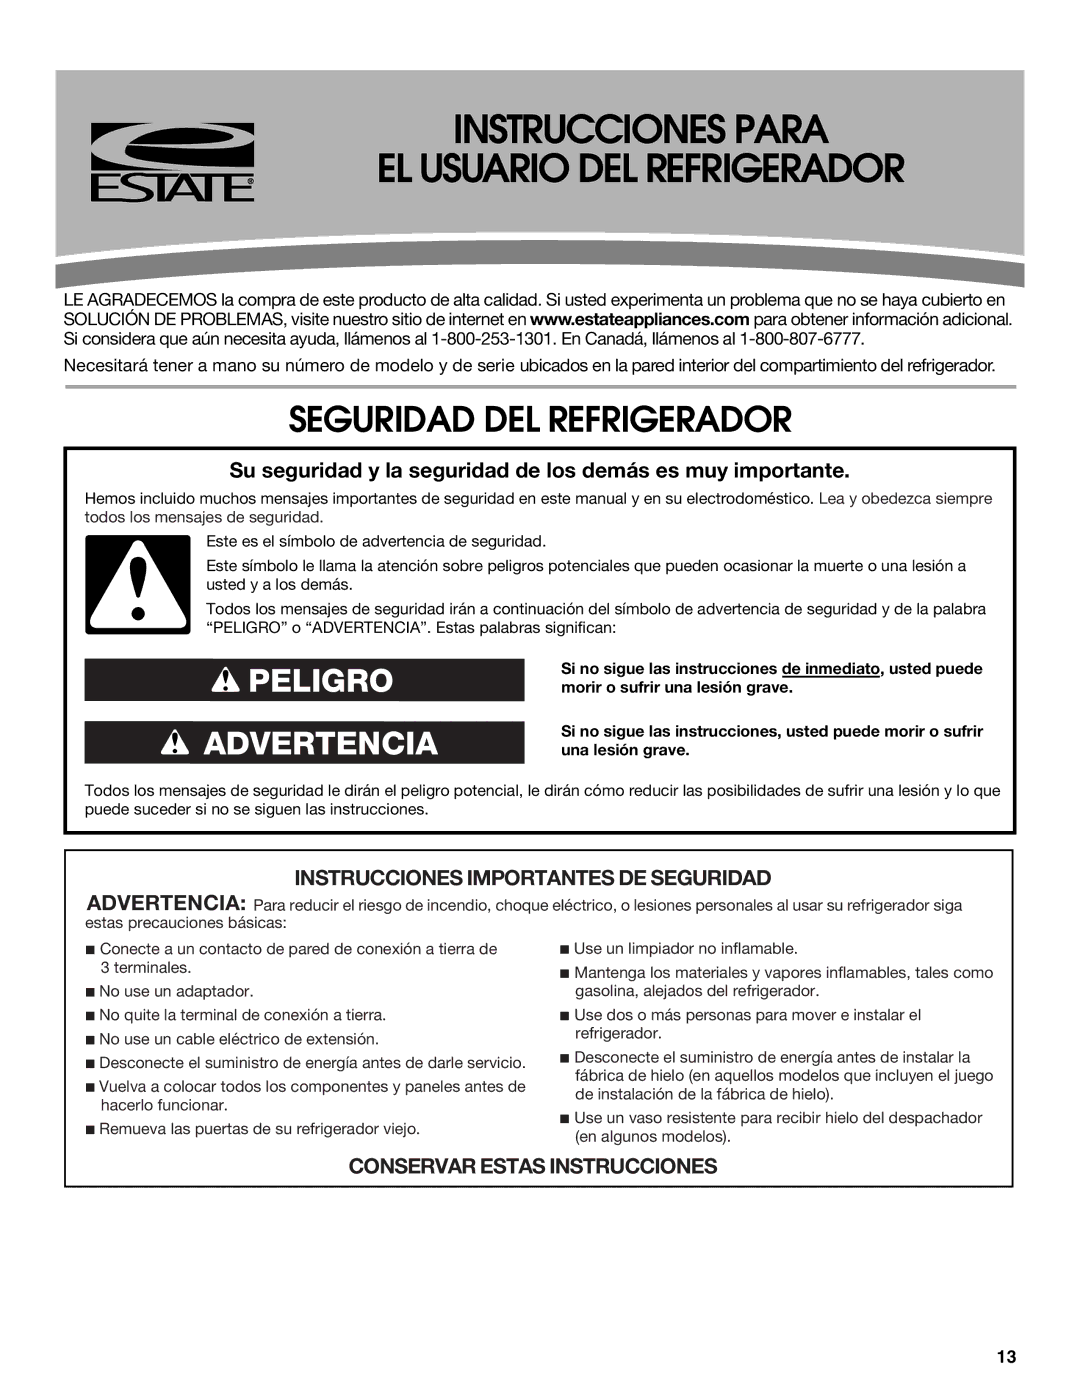 Estate W10193170A installation instructions Instrucciones Para EL Usuario DEL Refrigerador, Seguridad DEL Refrigerador 